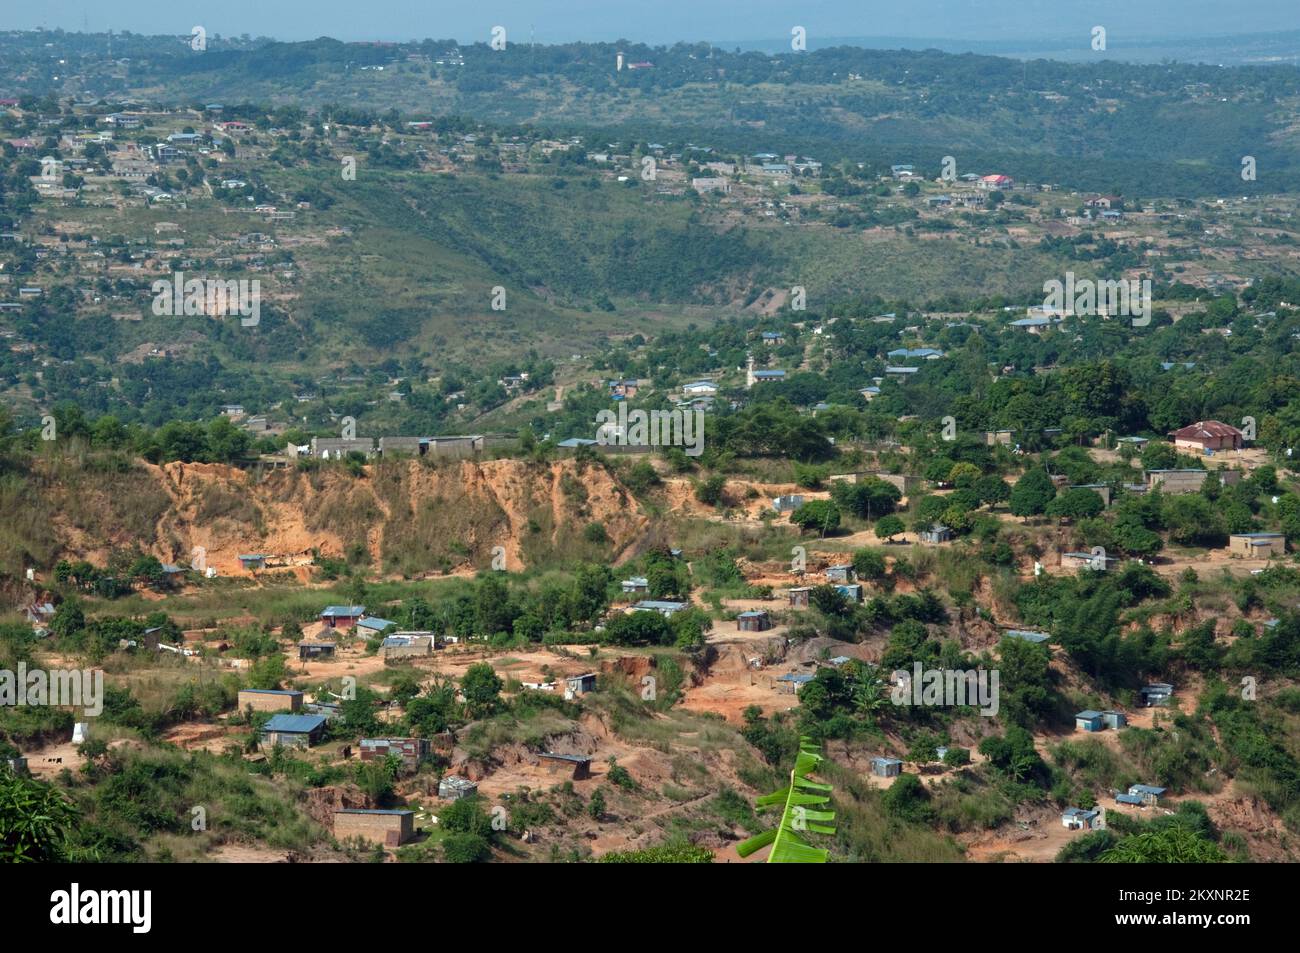 Hügel um Kinshasa, Demokratische Republik Kongo. Die Auswirkungen der Erosion sind im Vordergrund deutlich zu erkennen. Stockfoto